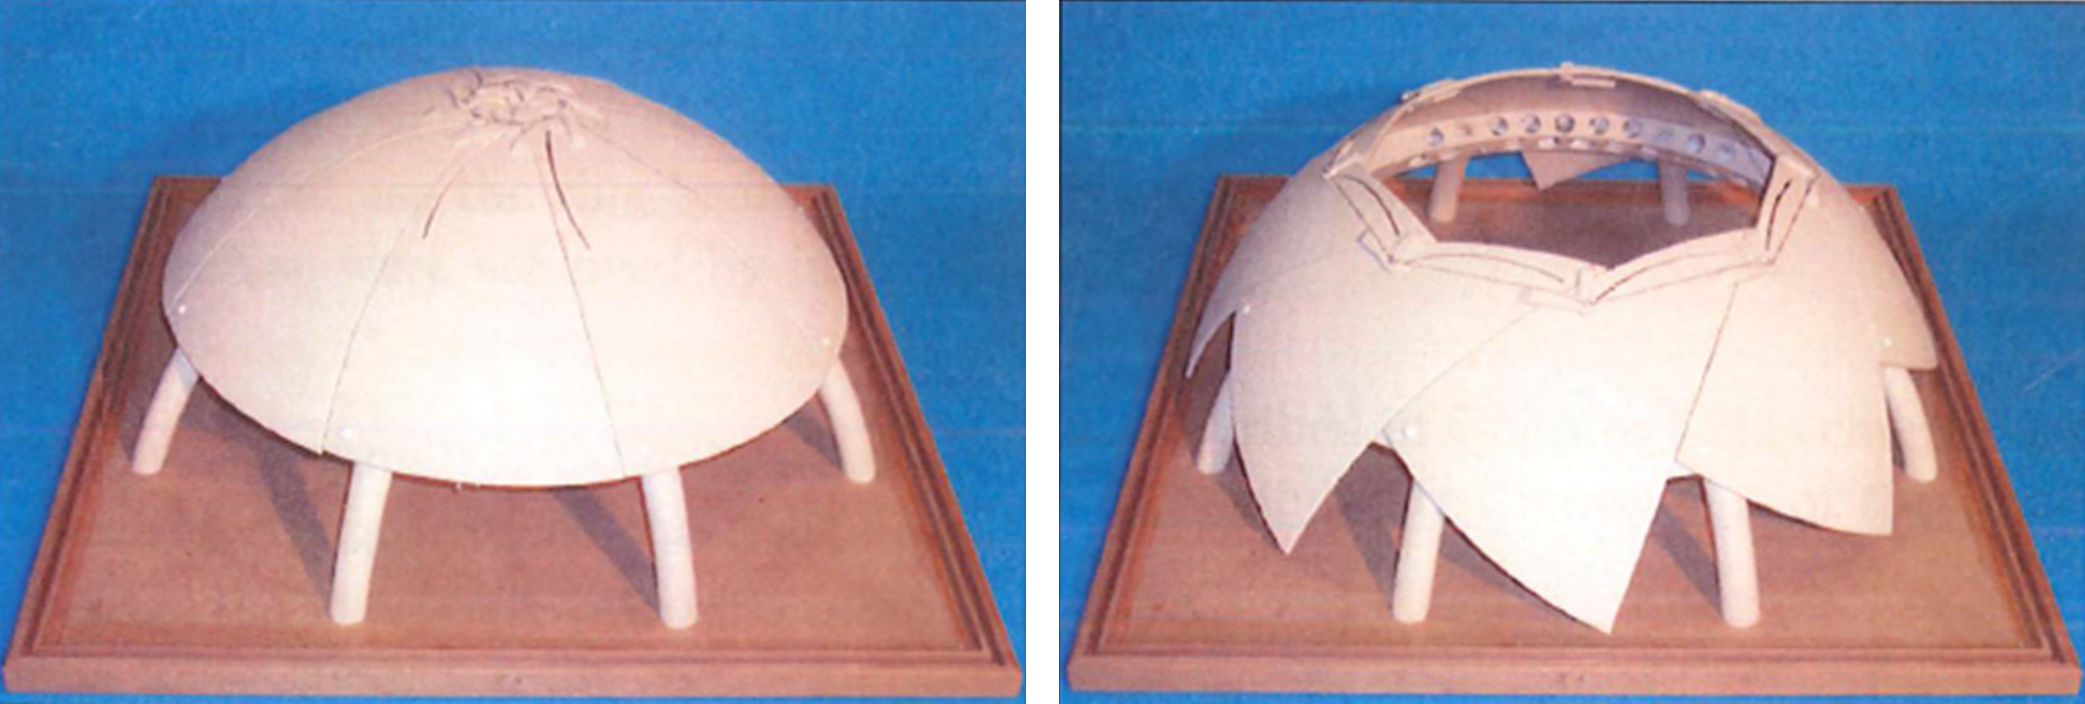 Sincronización de las aletas durante la apertura de la cúpula esférica por el Dr. Frank Vadstrup Jensen.